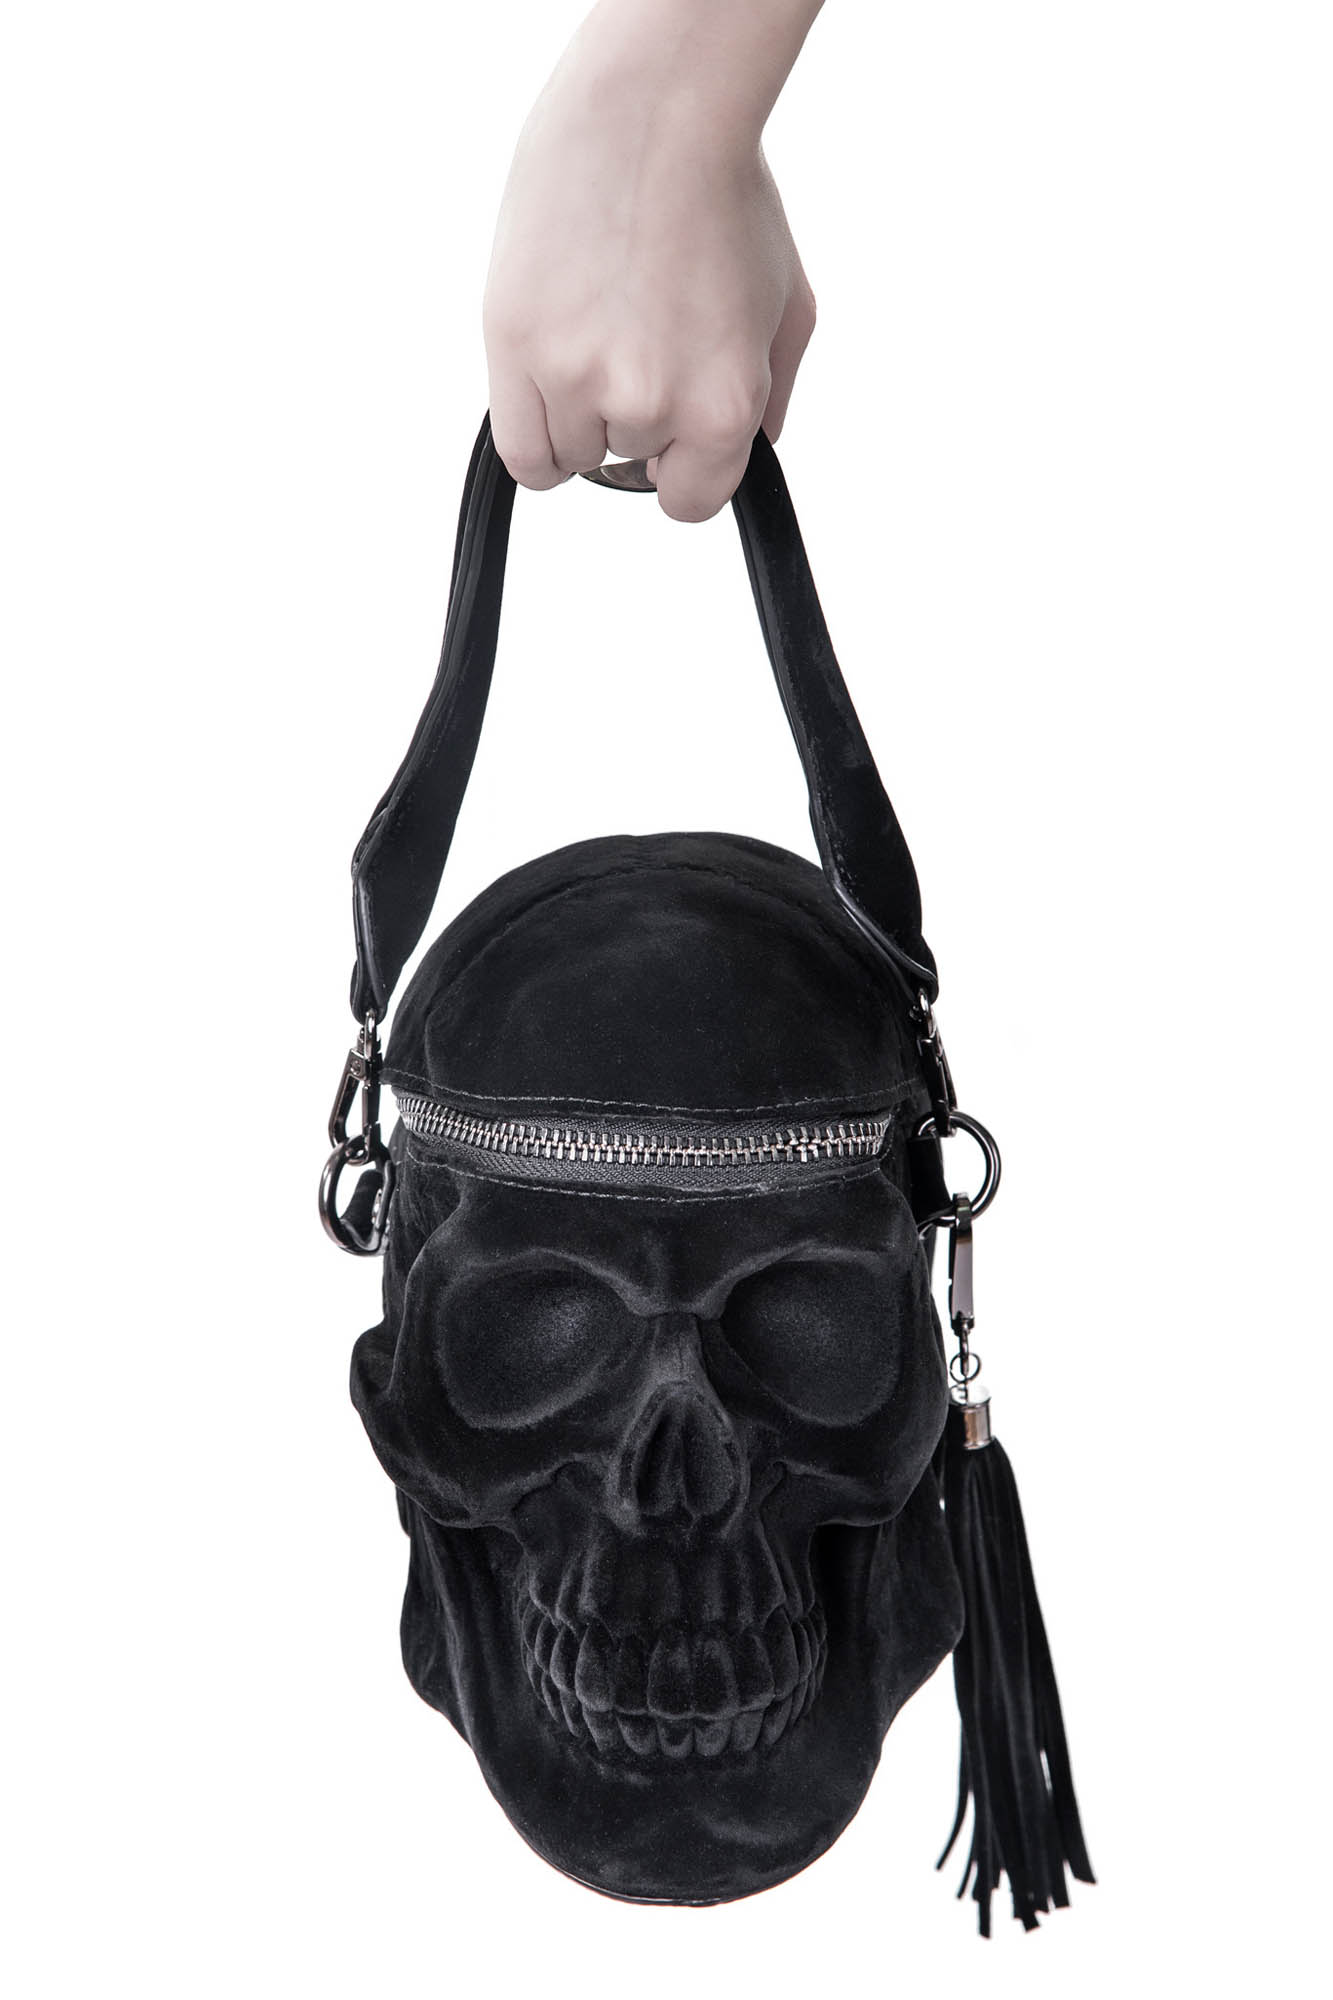 Kreepsville 666 Skull Black Purse Death Skull Skeleton Coffin Handbag Bag -  Fearless Apparel